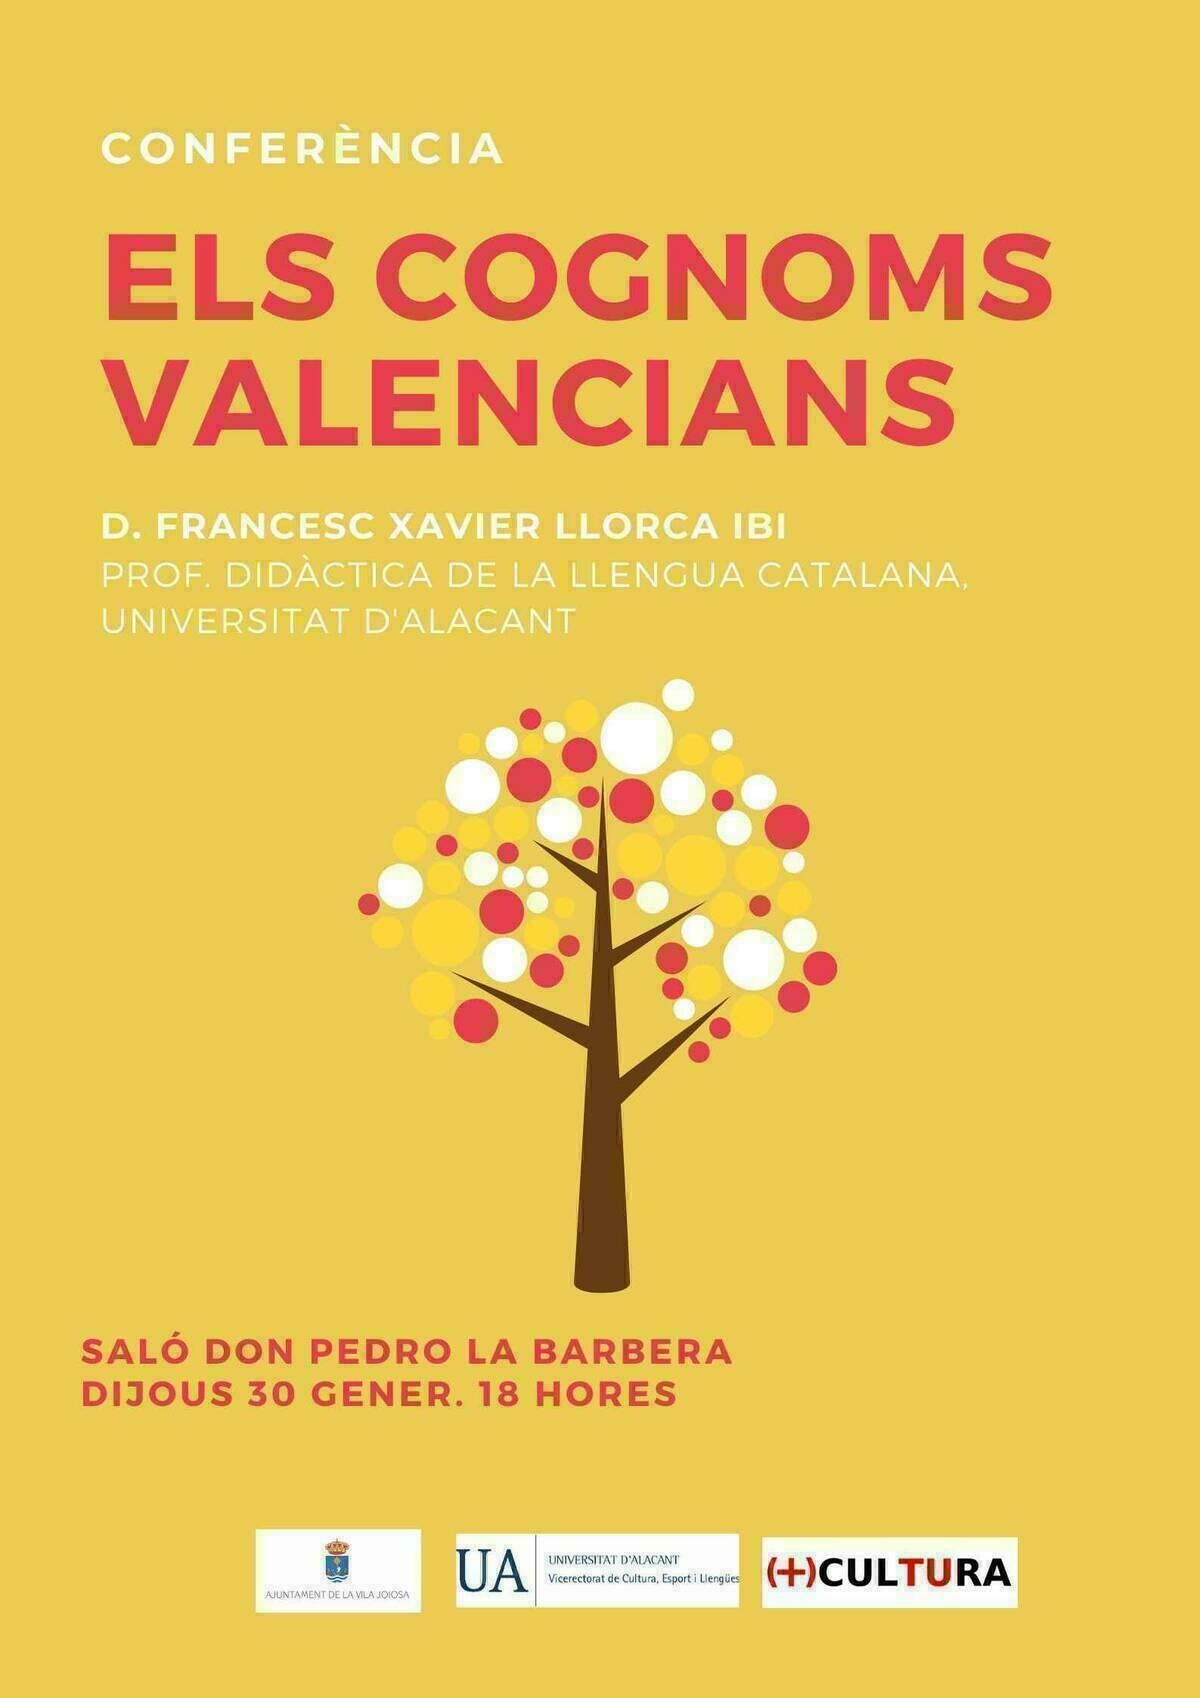 El Salón Don Pedro de la Barbera acoge la conferencia ‘Els cognoms valencians’